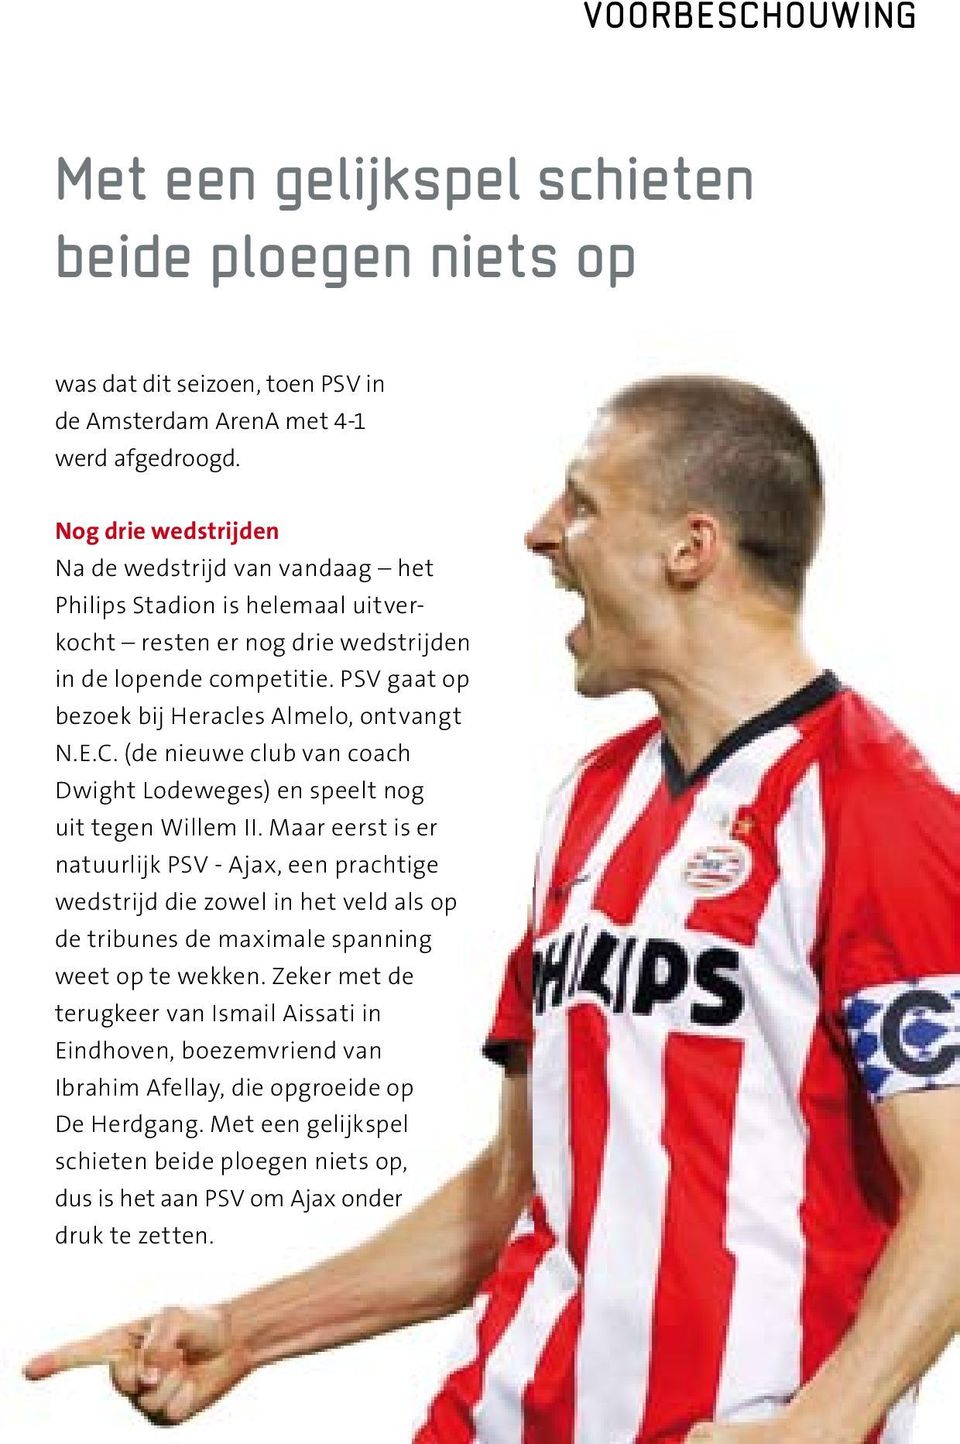 PSV gaat op bezoek bij Heracles Almelo, ontvangt N.E.C. (de nieuwe club van coach Dwight Lodeweges) en speelt nog uit tegen Willem II.